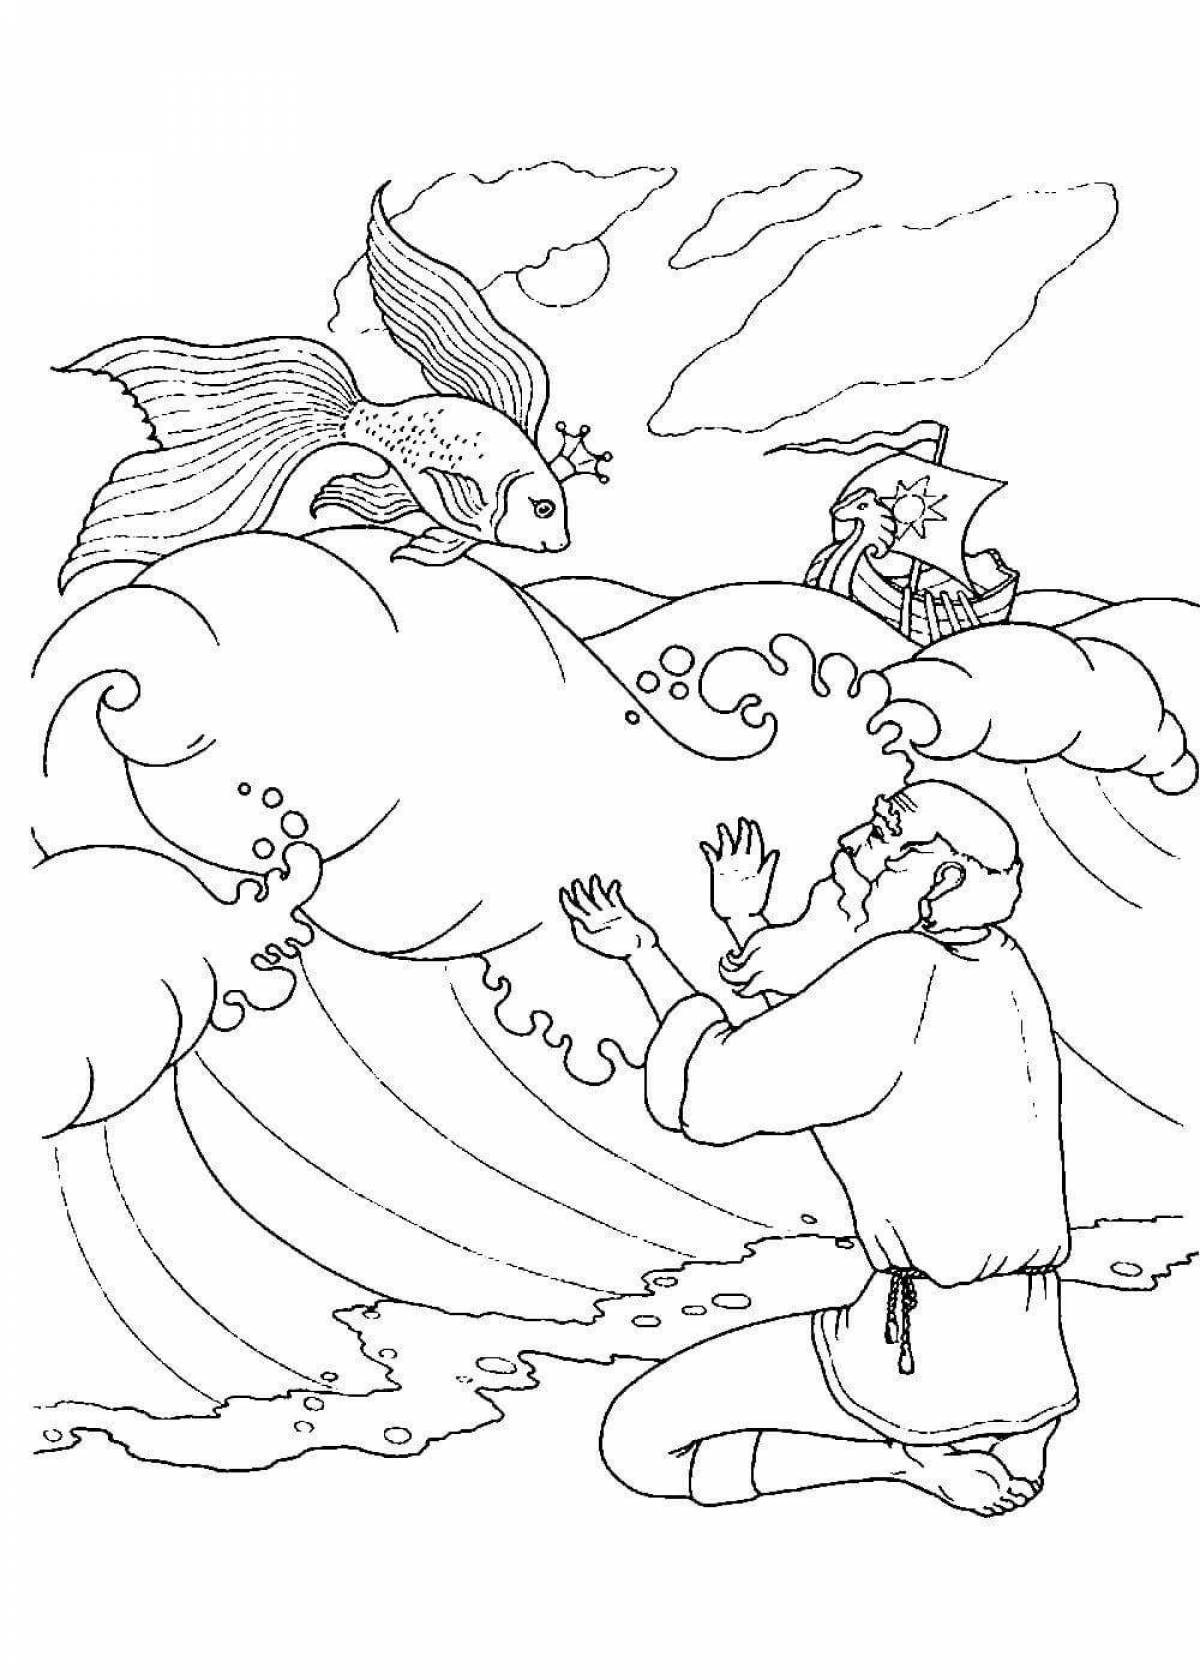 Fun coloring book based on Pushkin's fairy tales